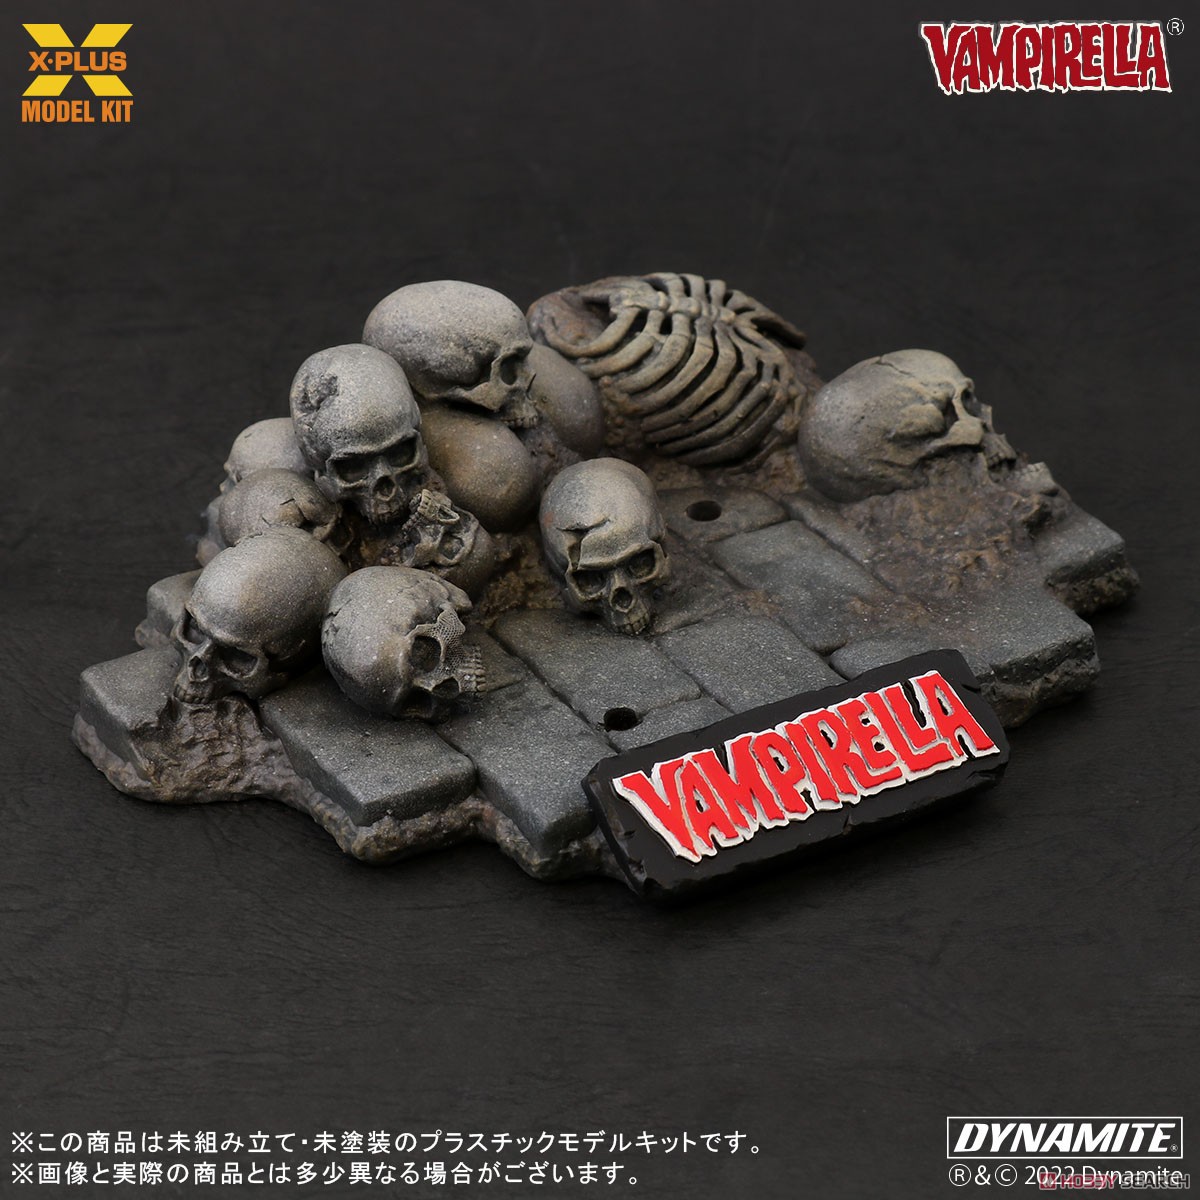 Vampirella『ヴァンピレラ ホセ・ゴンザレス エディション 』1/8スケール プラスチック モデルキット-009